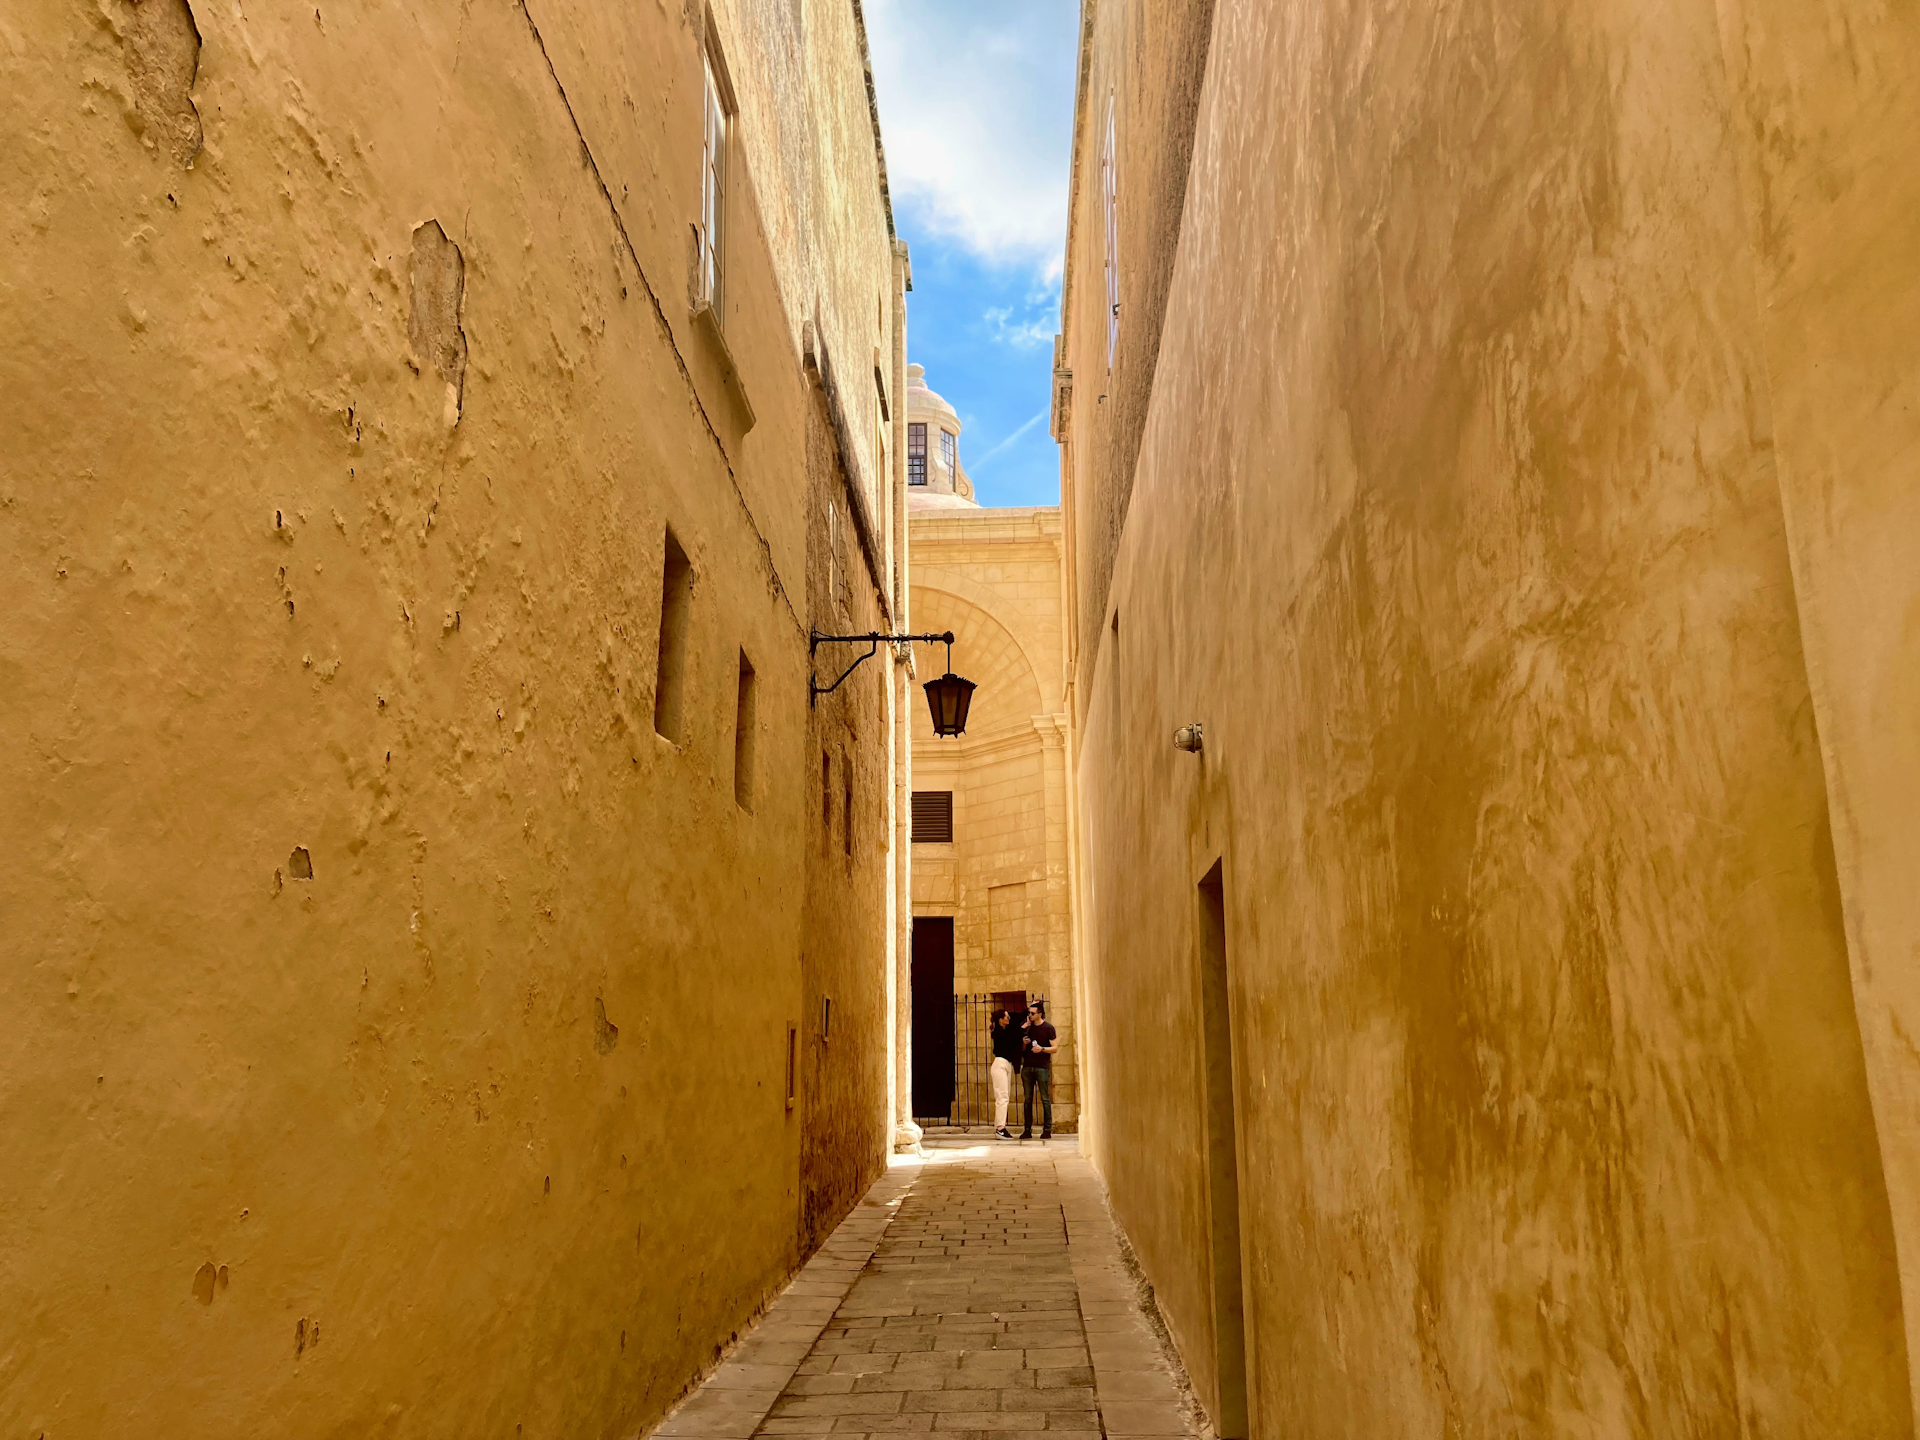 The ochre-hued backstreets of Mdina